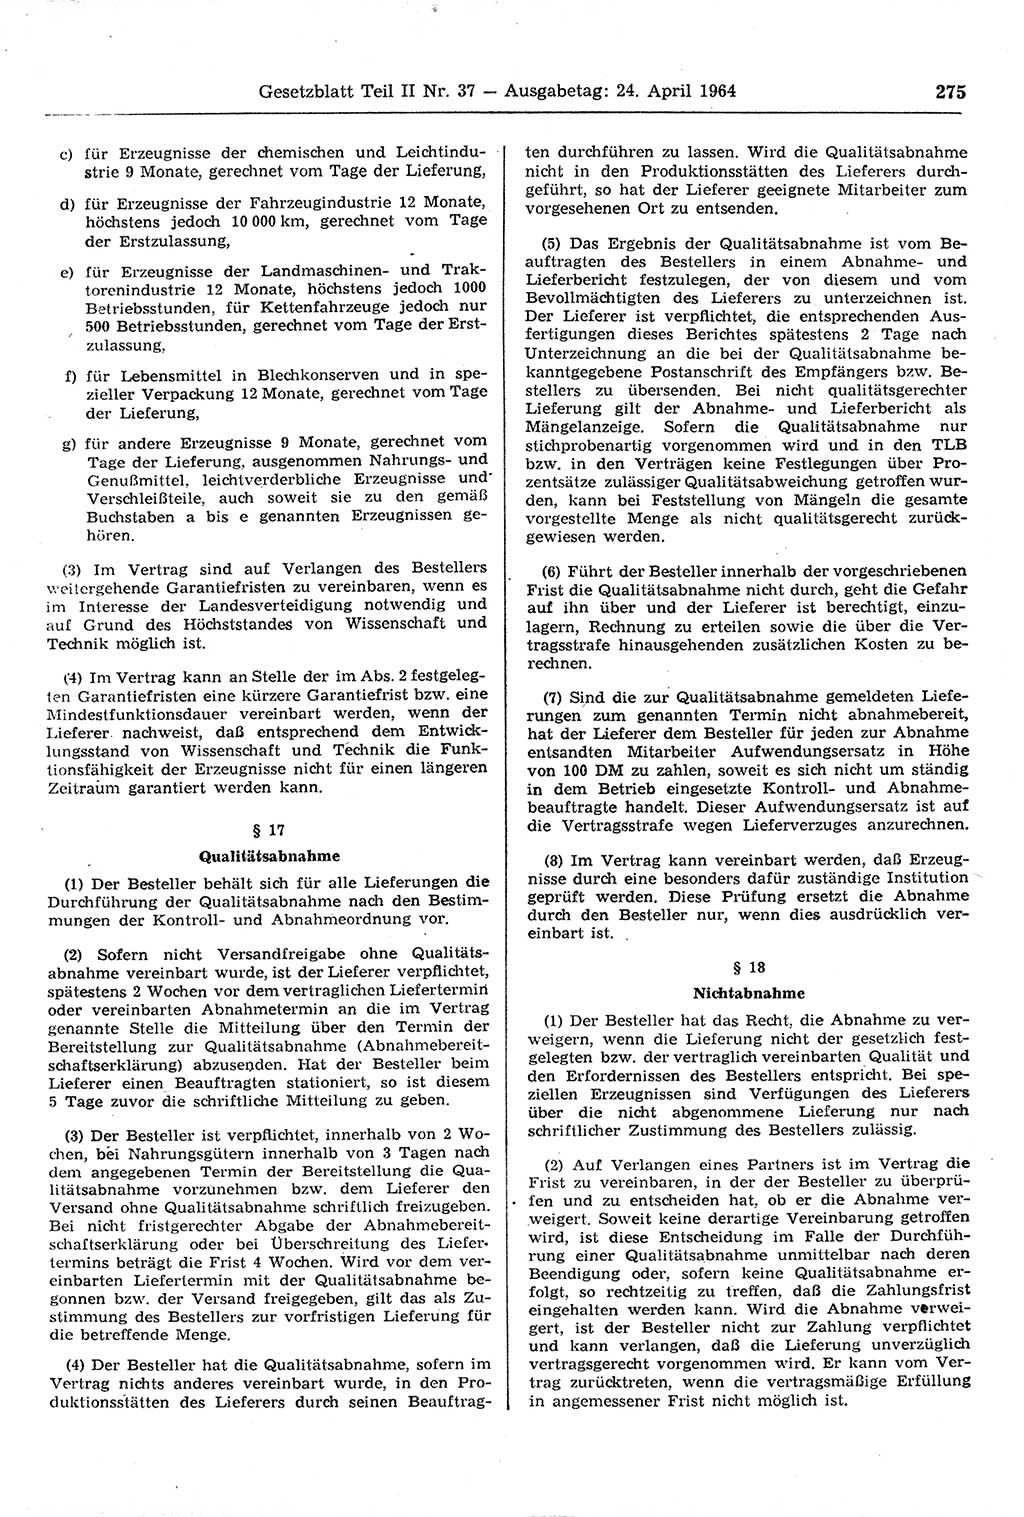 Gesetzblatt (GBl.) der Deutschen Demokratischen Republik (DDR) Teil ⅠⅠ 1964, Seite 275 (GBl. DDR ⅠⅠ 1964, S. 275)